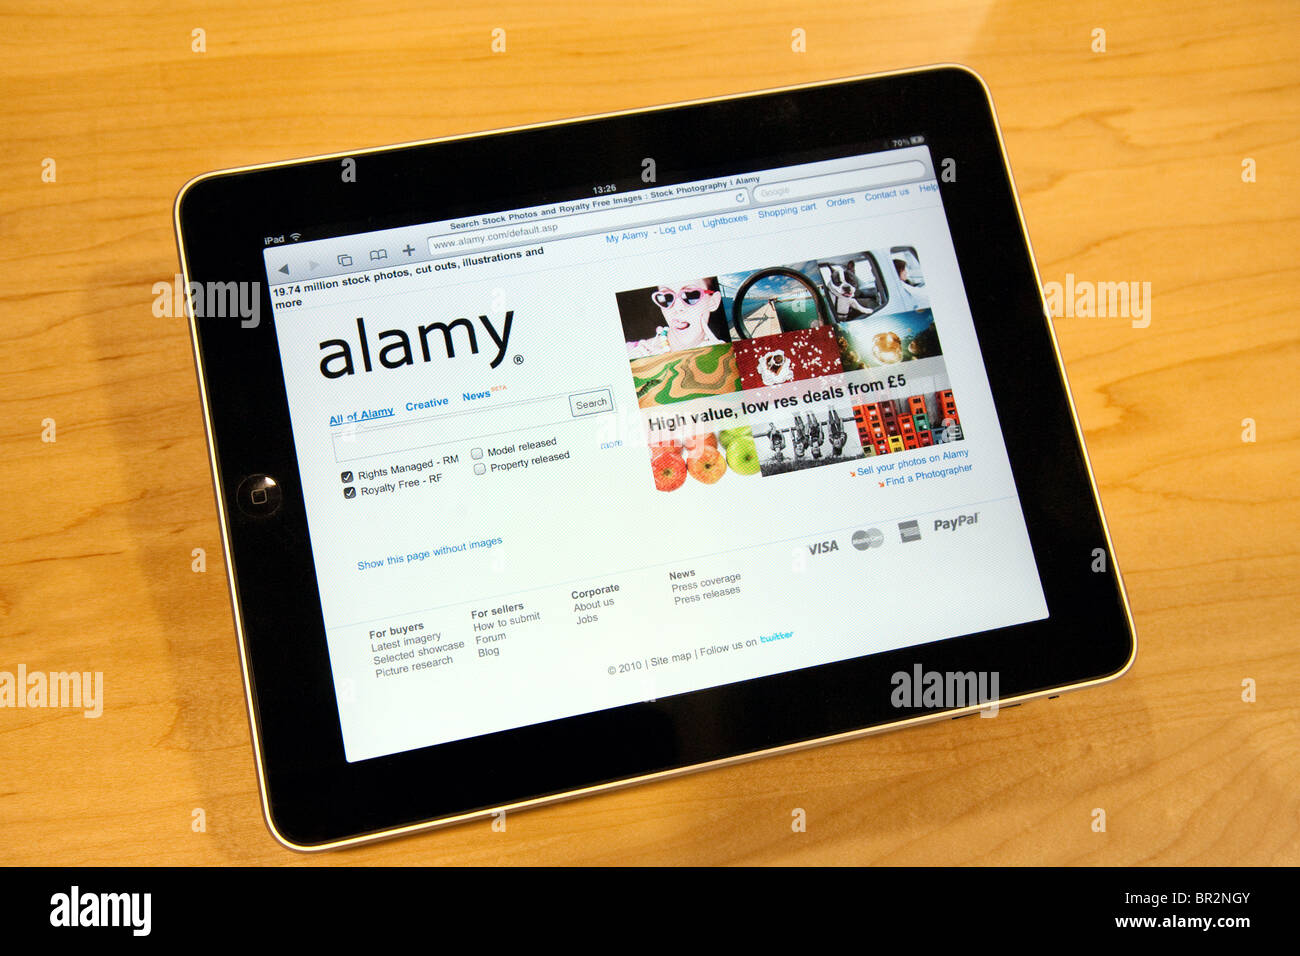 Un iPad de Apple mostrando el Alamy homepage, PC World, Cambridge, Reino Unido Foto de stock